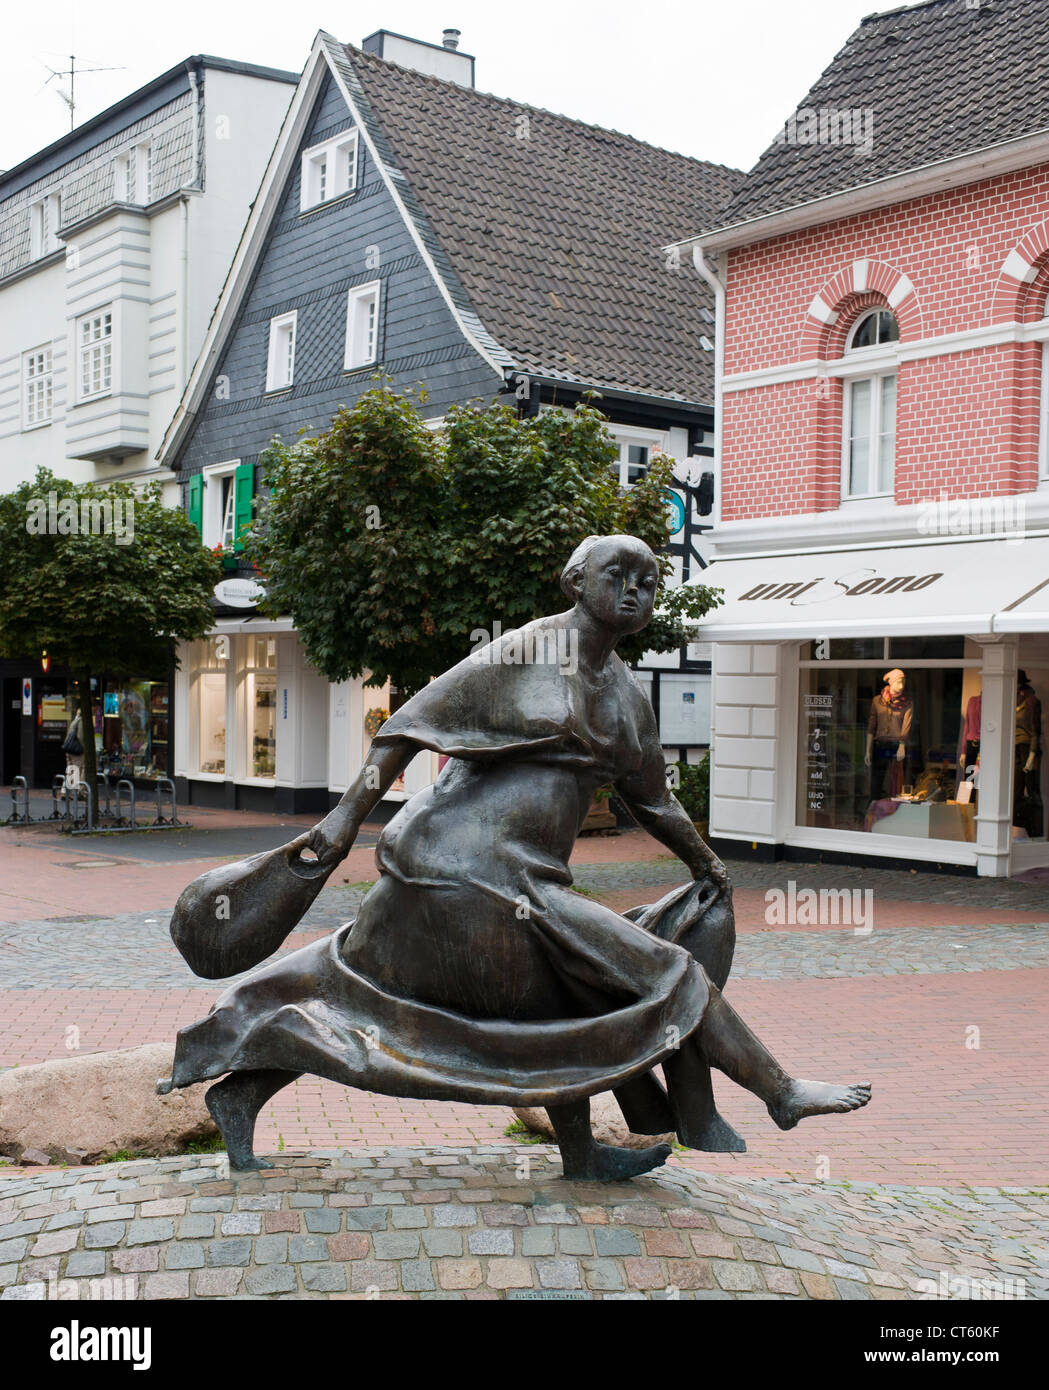 Eilige Einkäuferin by Karl Henning Seemann Bronze statue in Hilden, North Rhine-Westphalia Germany trans Hasty Buyer Woman Stock Photo